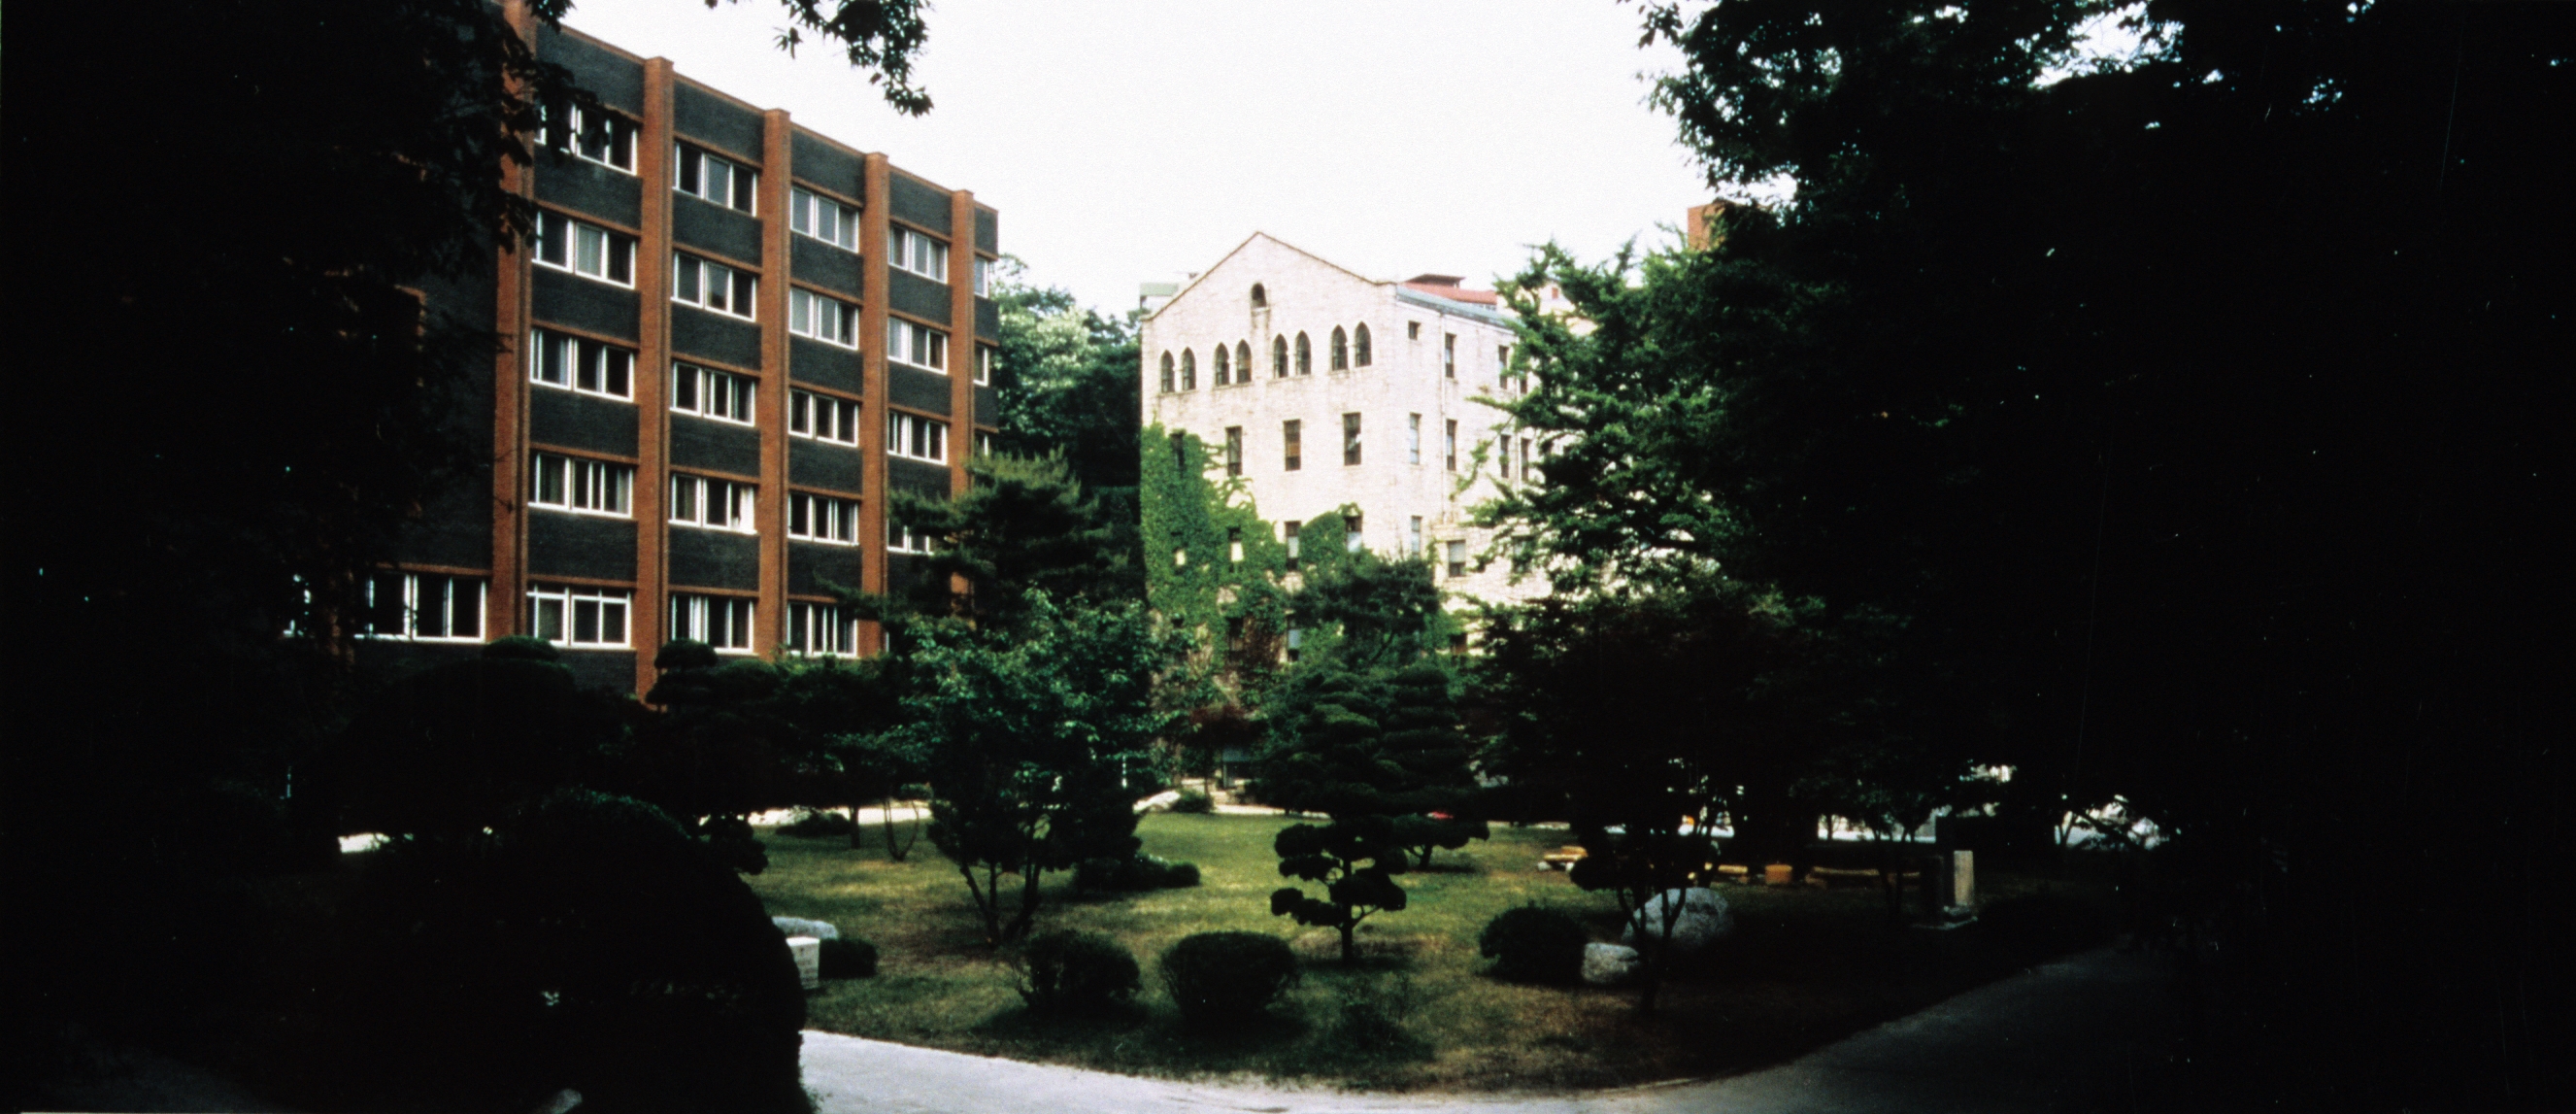 가톨릭대학교 (1995통합 - ) (4)의 관련된 이미지 입니다.